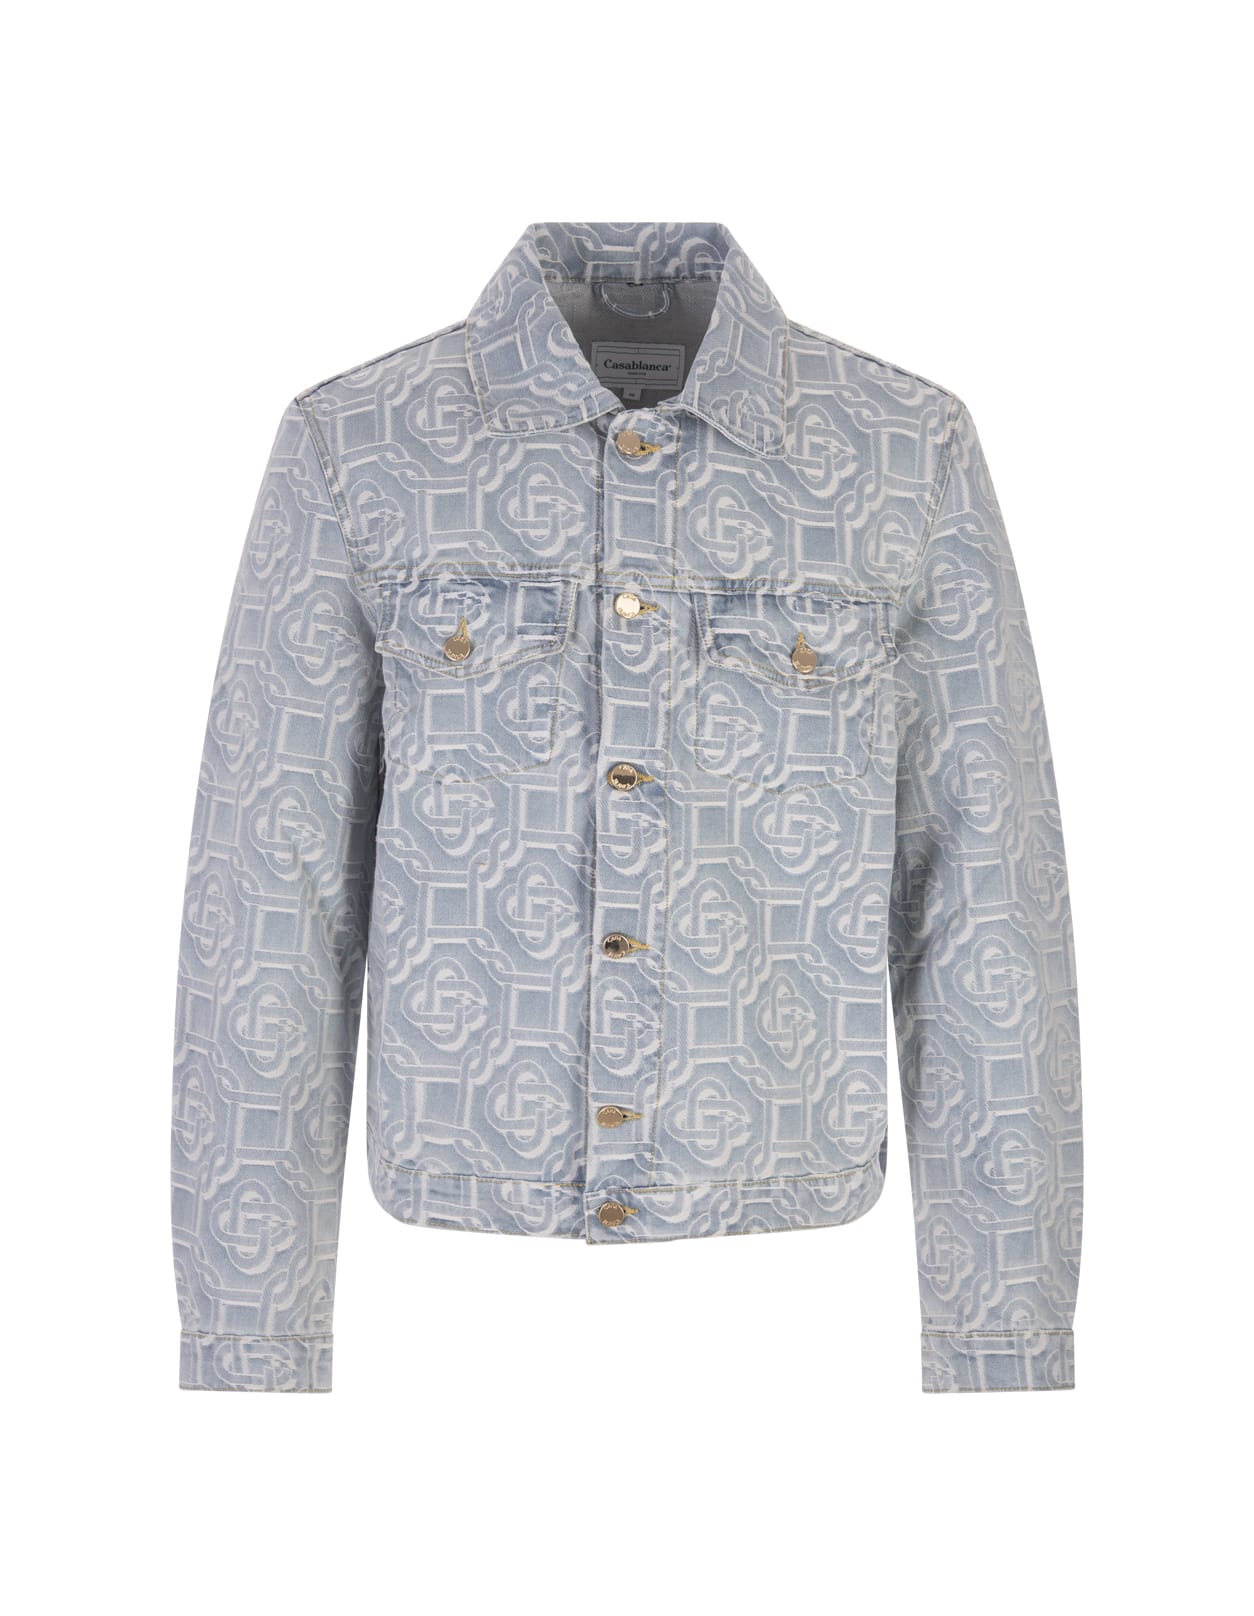 Louis Vuitton Napolitana Monogram Cotton Jacket